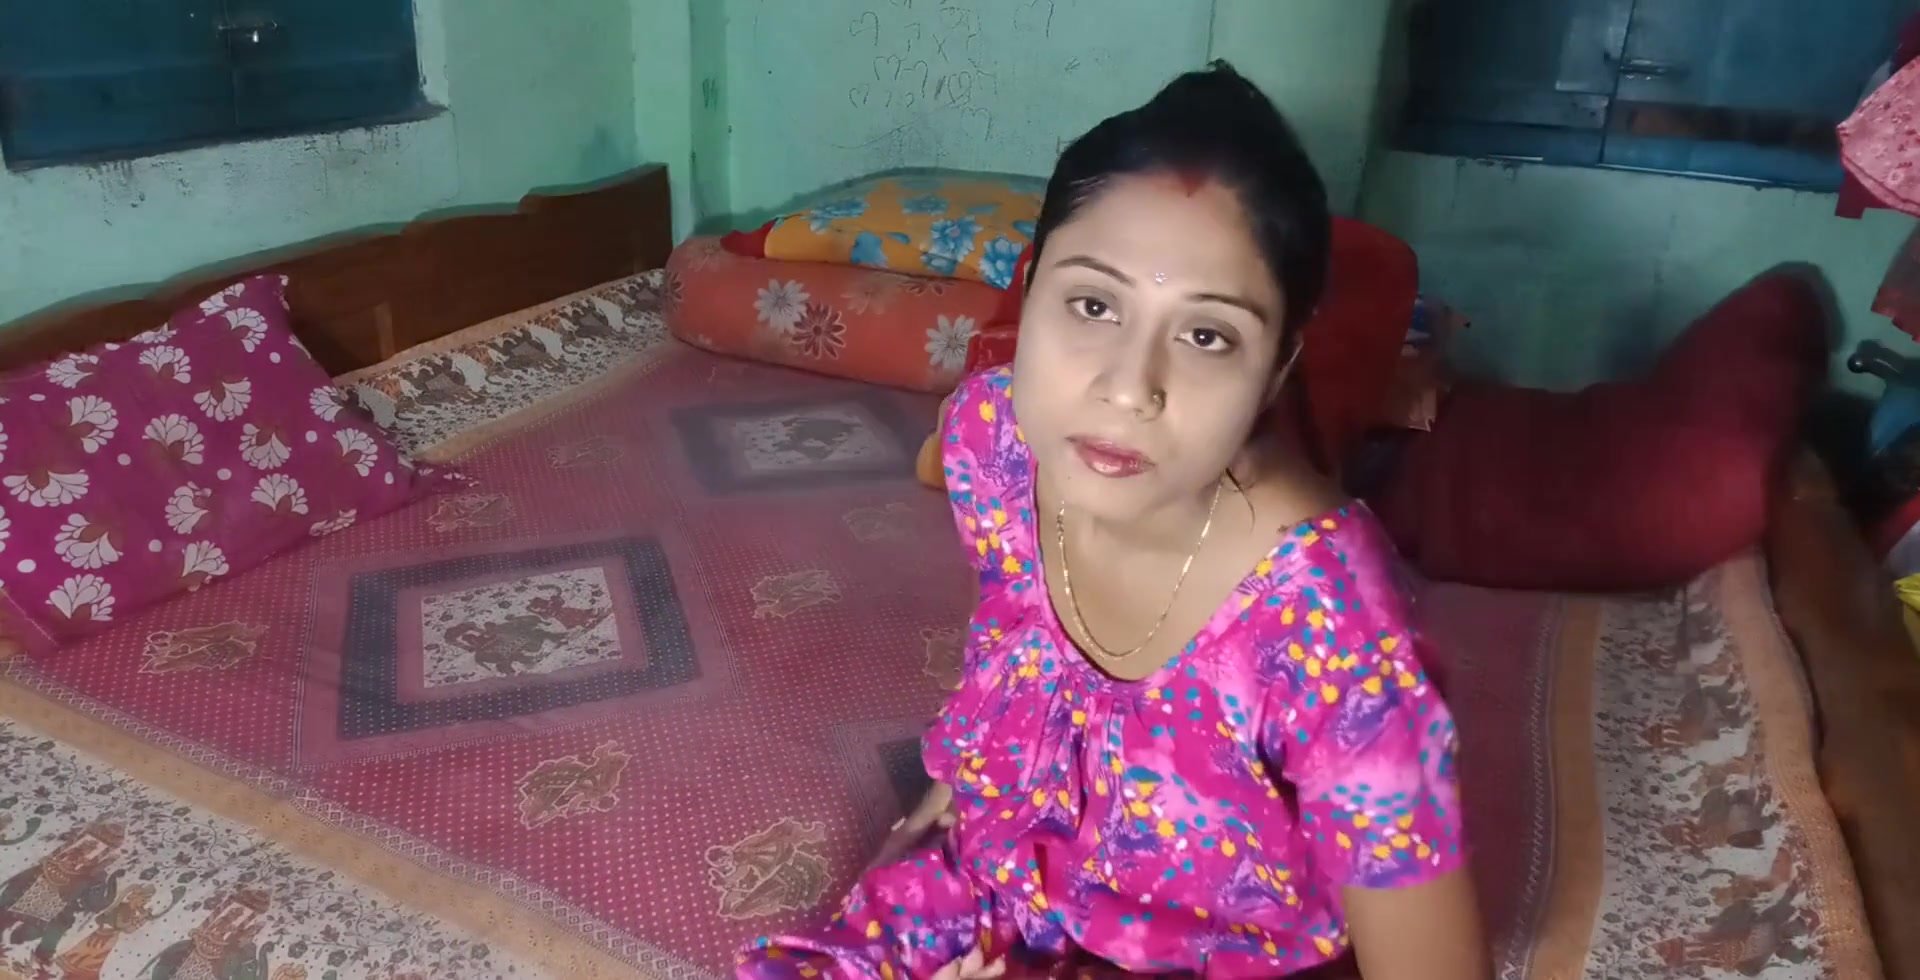 Bengali Kolkata boudi Love making Video with Hubby 4K - ThisVid.com